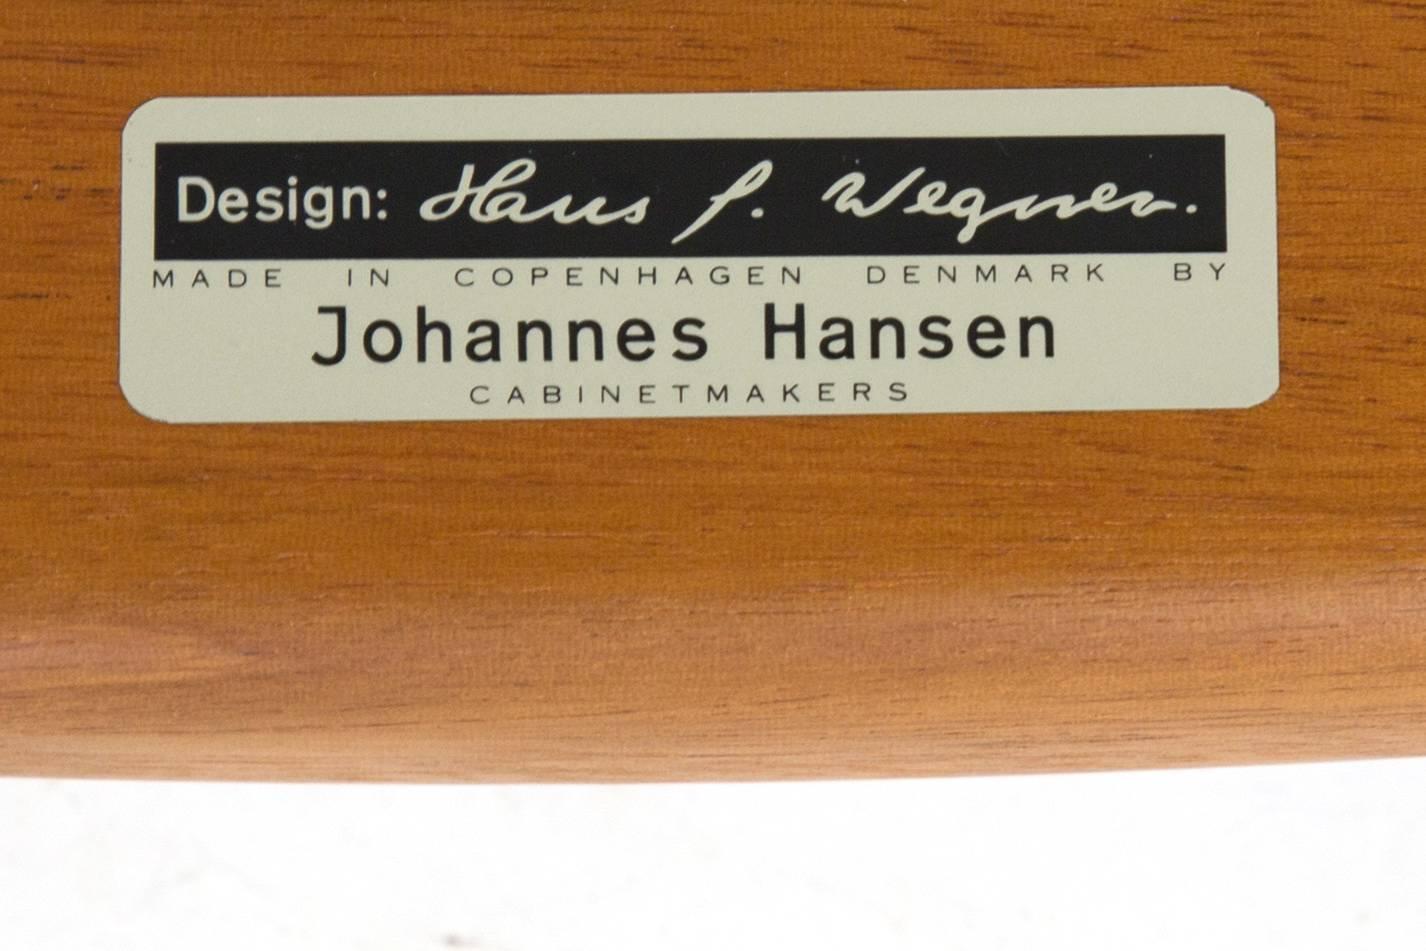 Danish Hans J. Wegner, 'the Chair' for Johannes Hansen